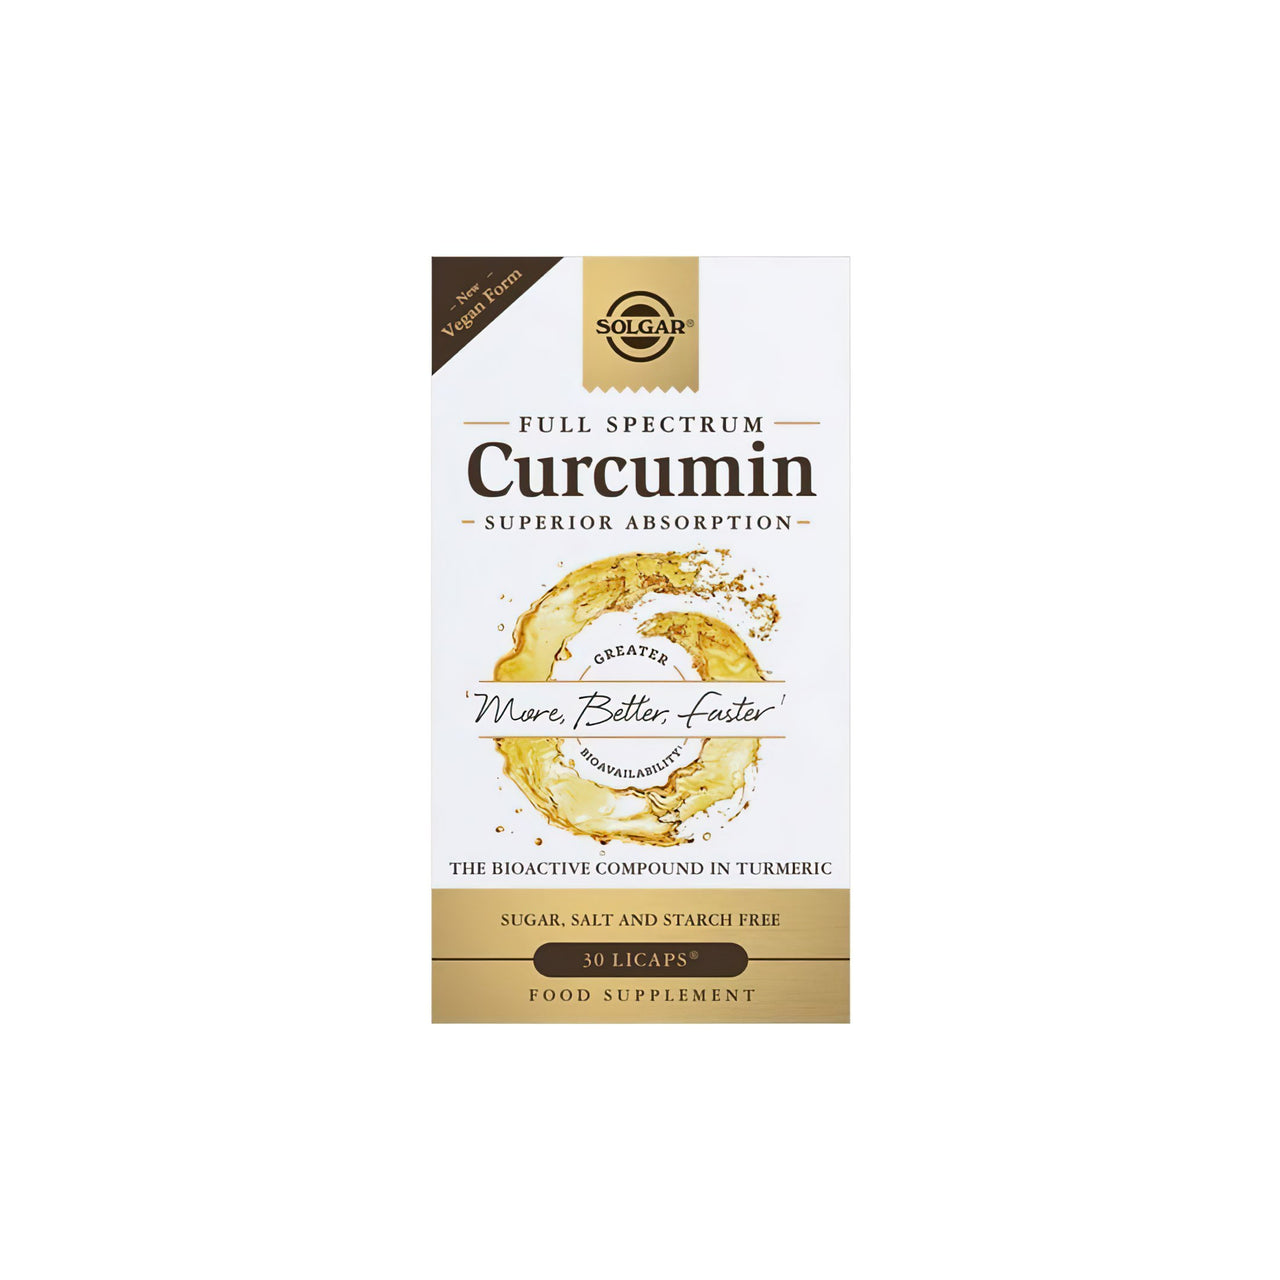 Una confezione di Full Spectrum Curcumin 30 Liquid Extract Softgel con etichetta oro di Solgar.